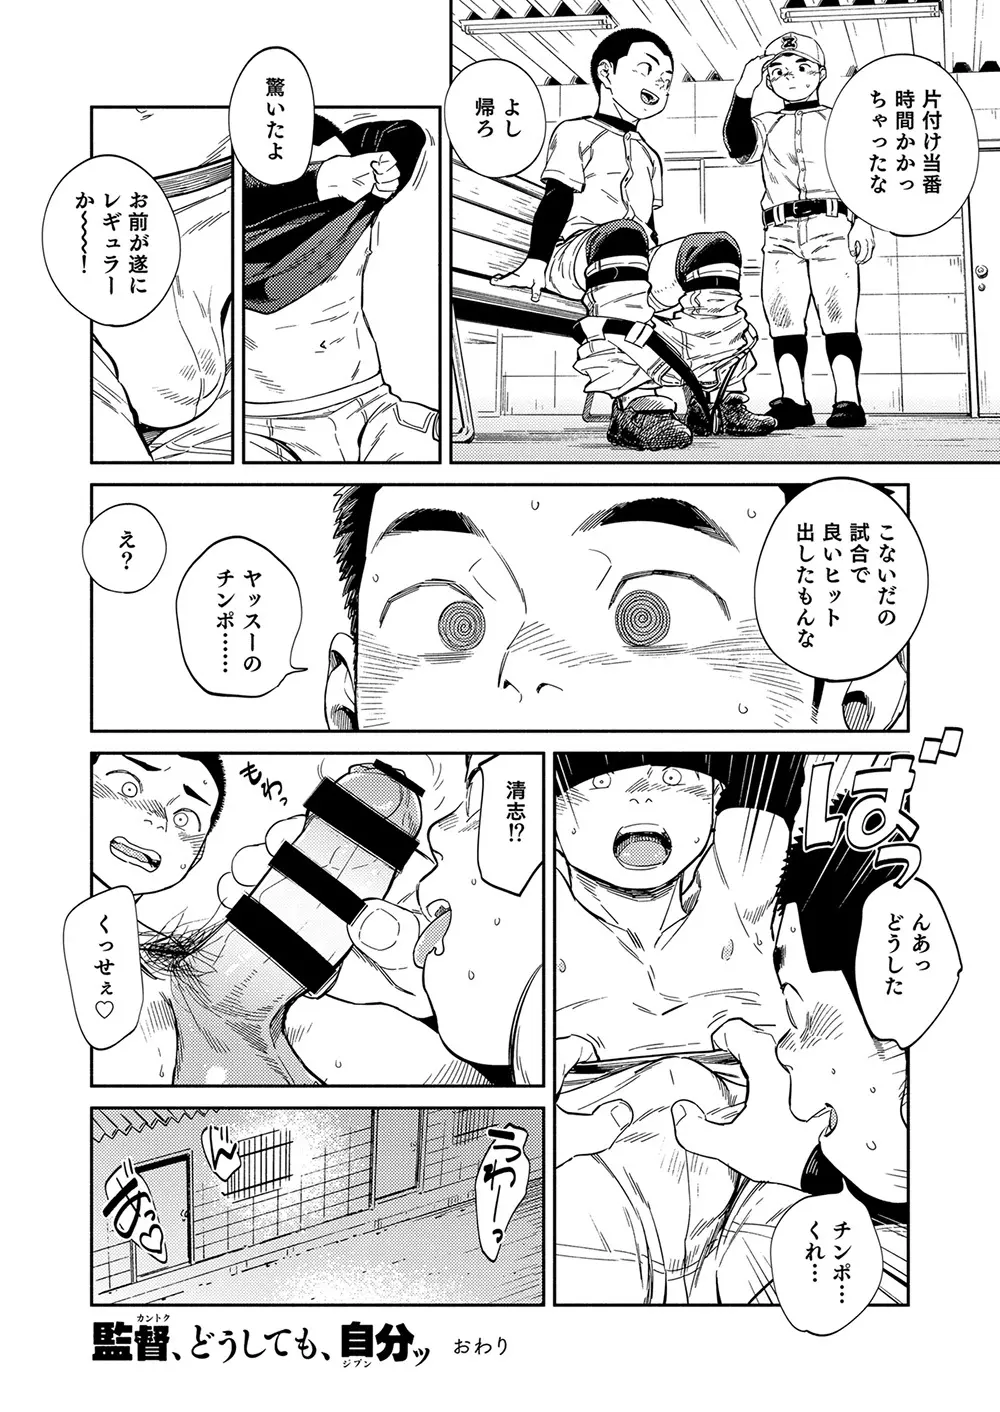 漫画少年ズーム vol.32 48ページ